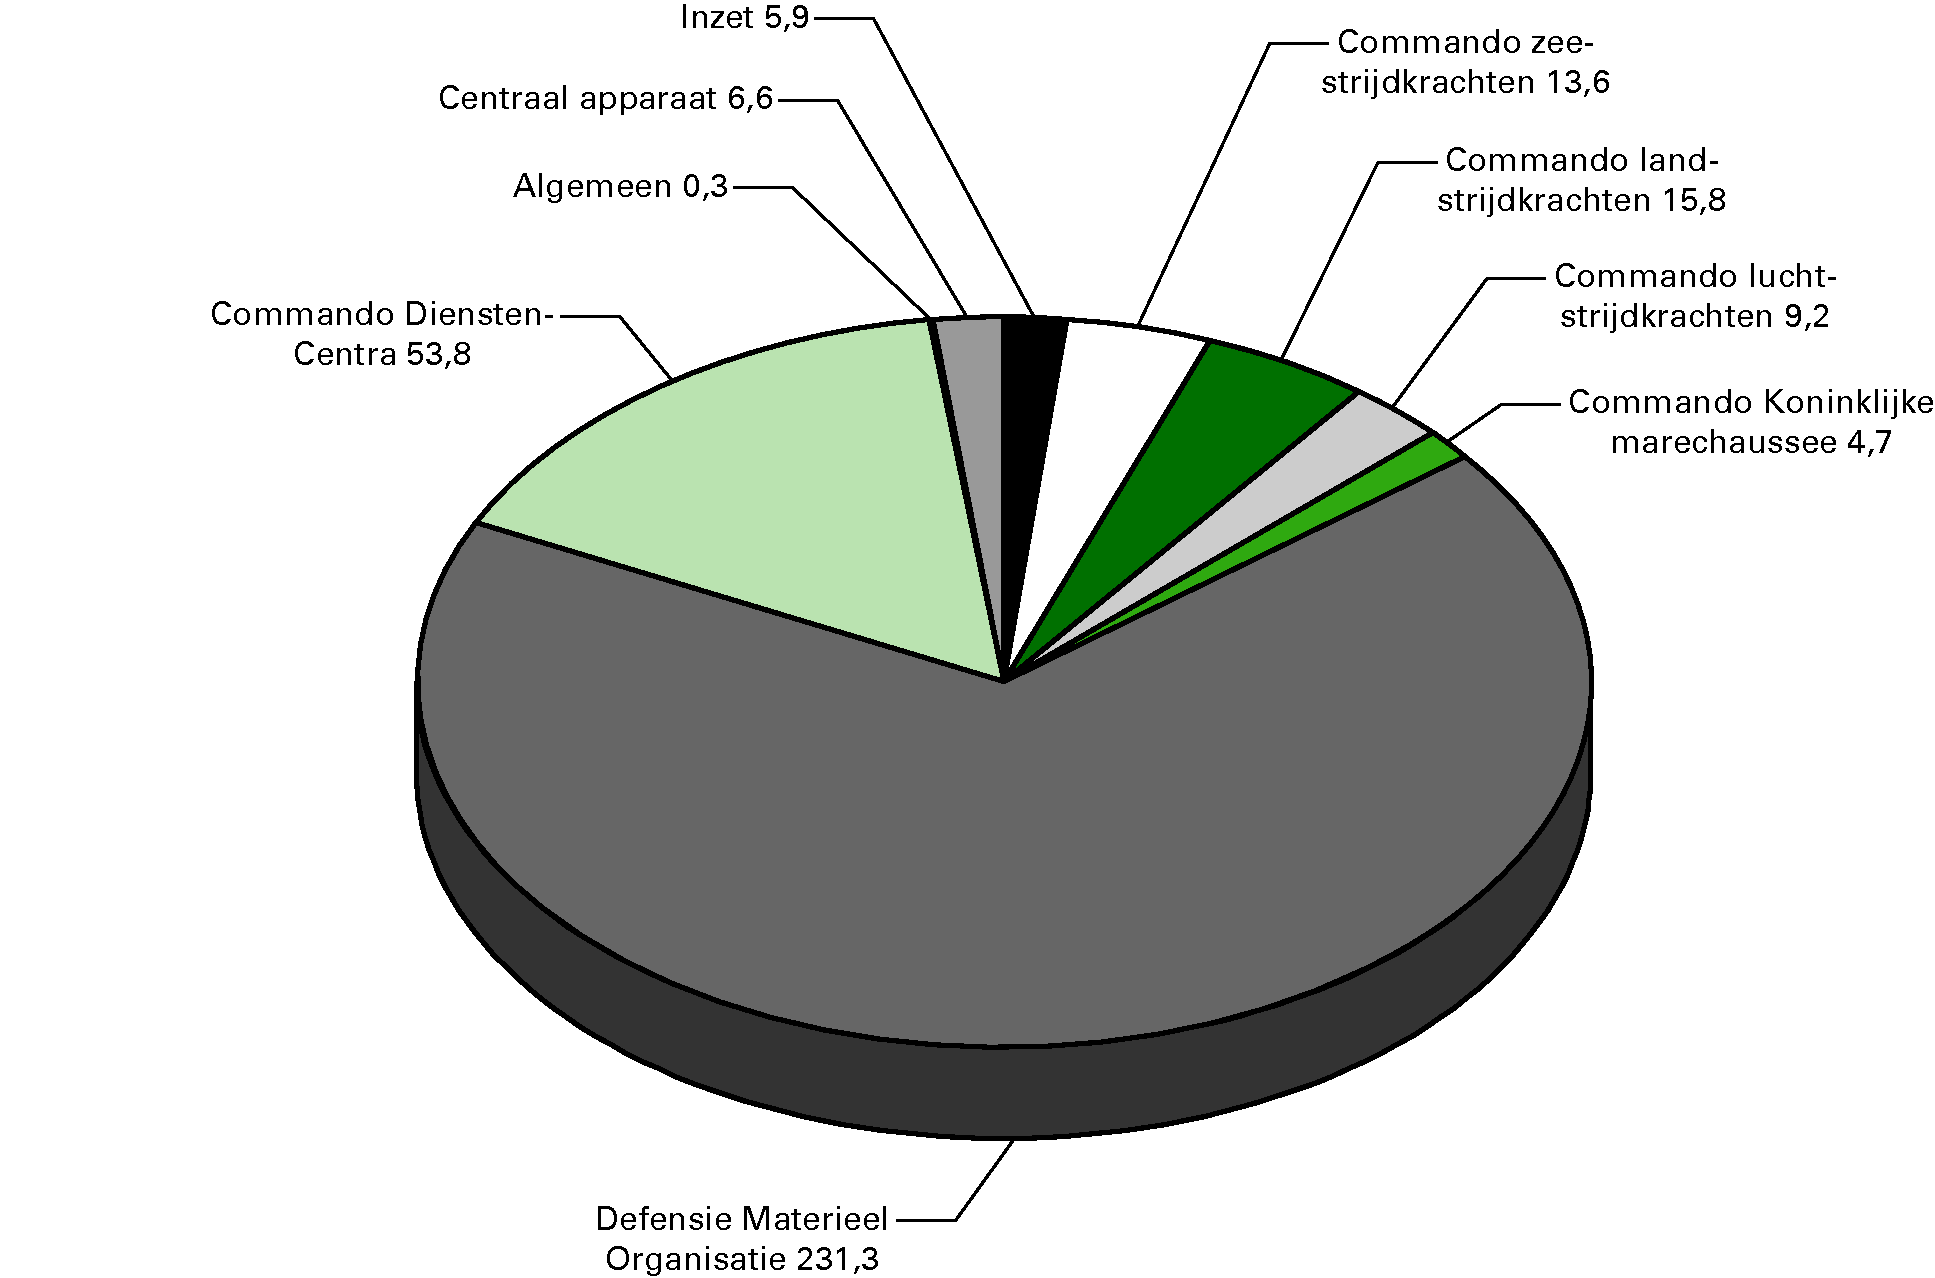 Ontvangstenverdeling Defensie (bedragen x € 1 				  miljoen)